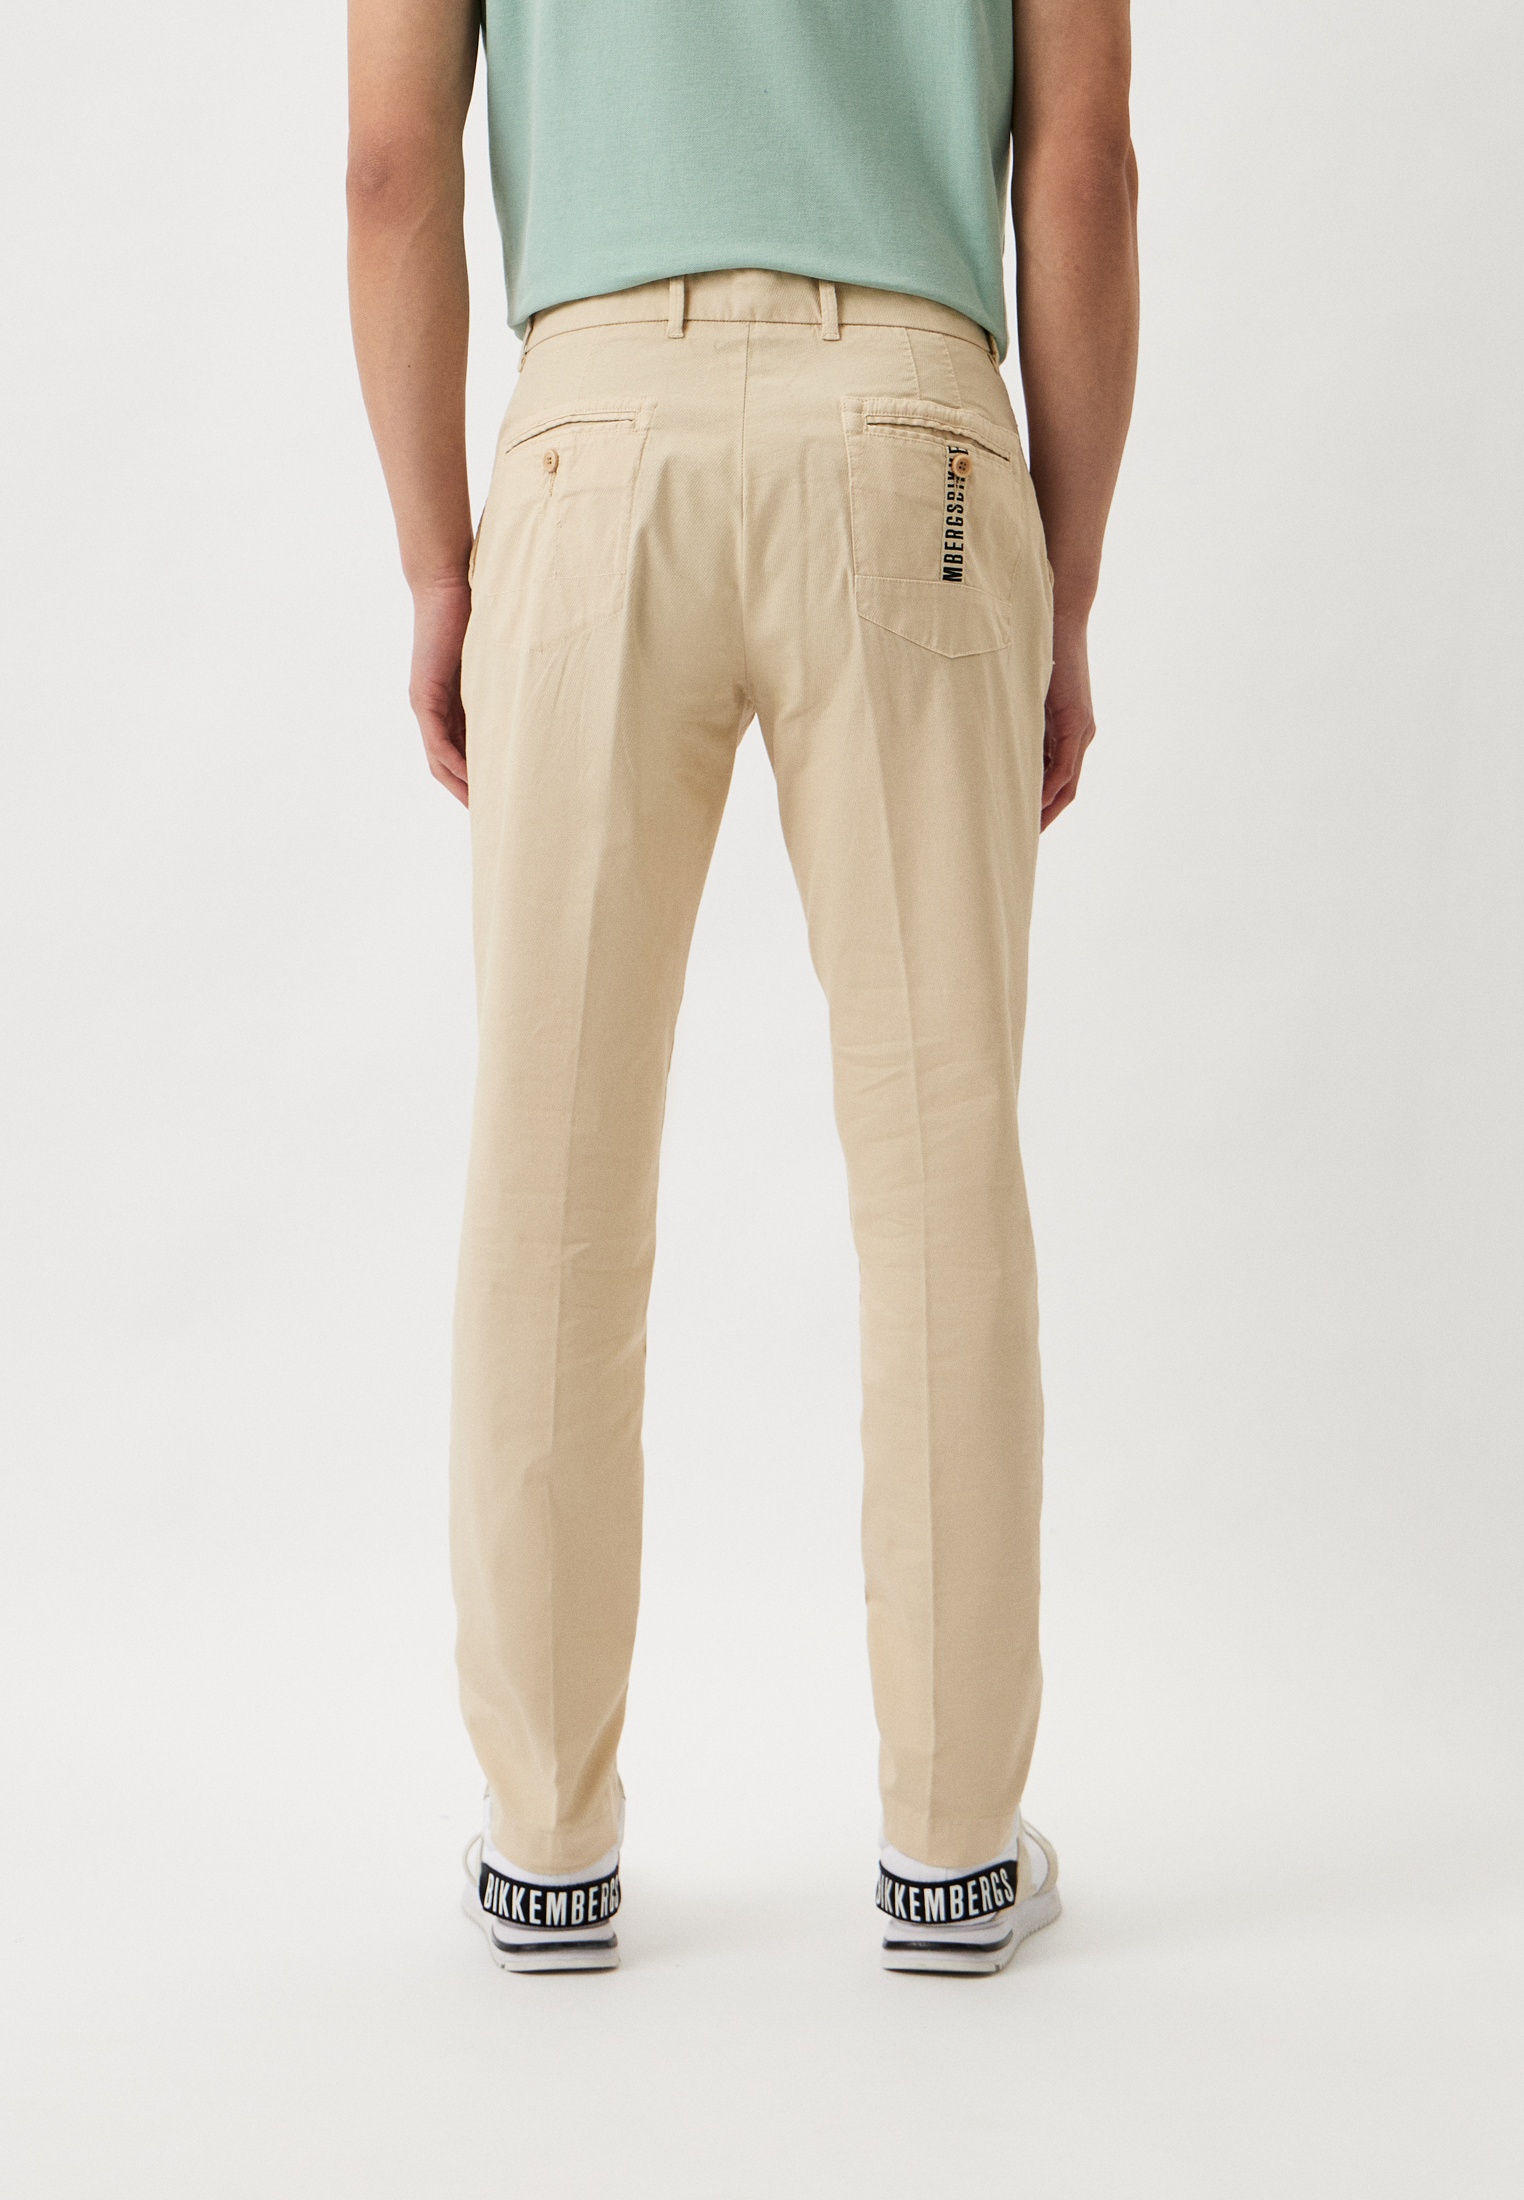 Мужские повседневные брюки Bikkembergs (Биккембергс) CP13580S3967: изображение 7